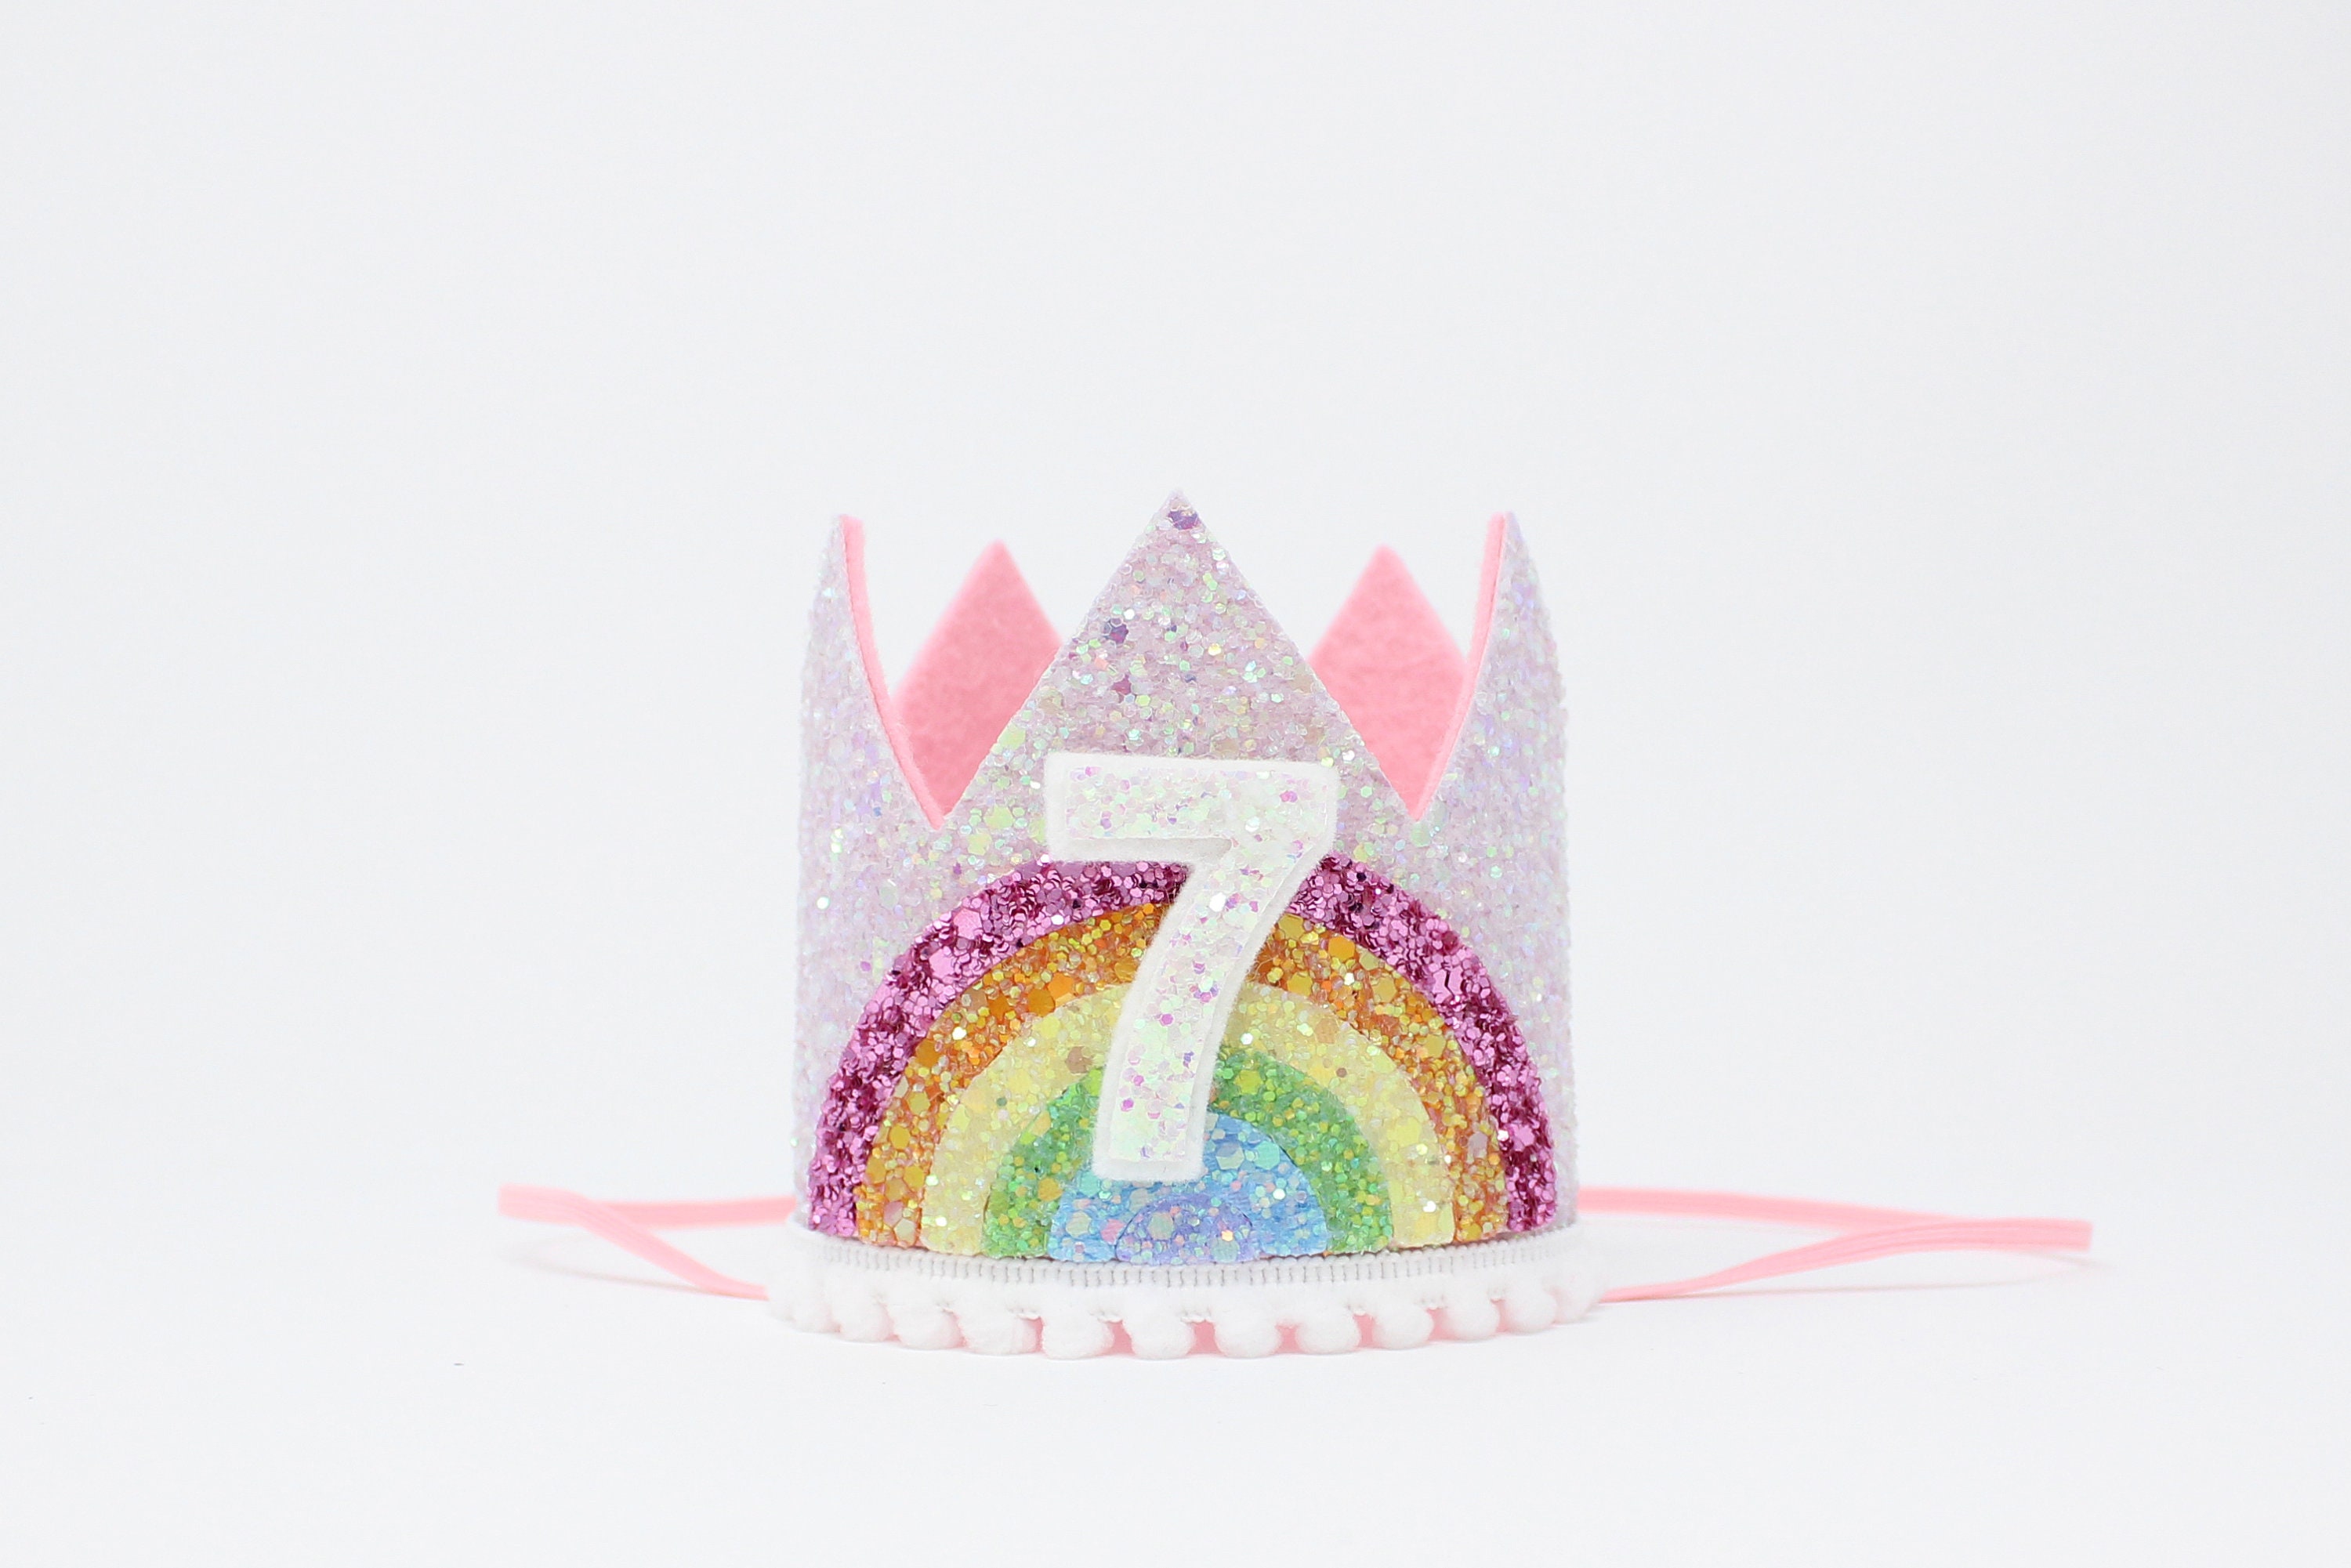 Corona arcoíris para fiesta de 4º cumpleaños: corona de cumpleaños con  purpurina, sombreros de cumpleaños para niños, accesorios para fotos de